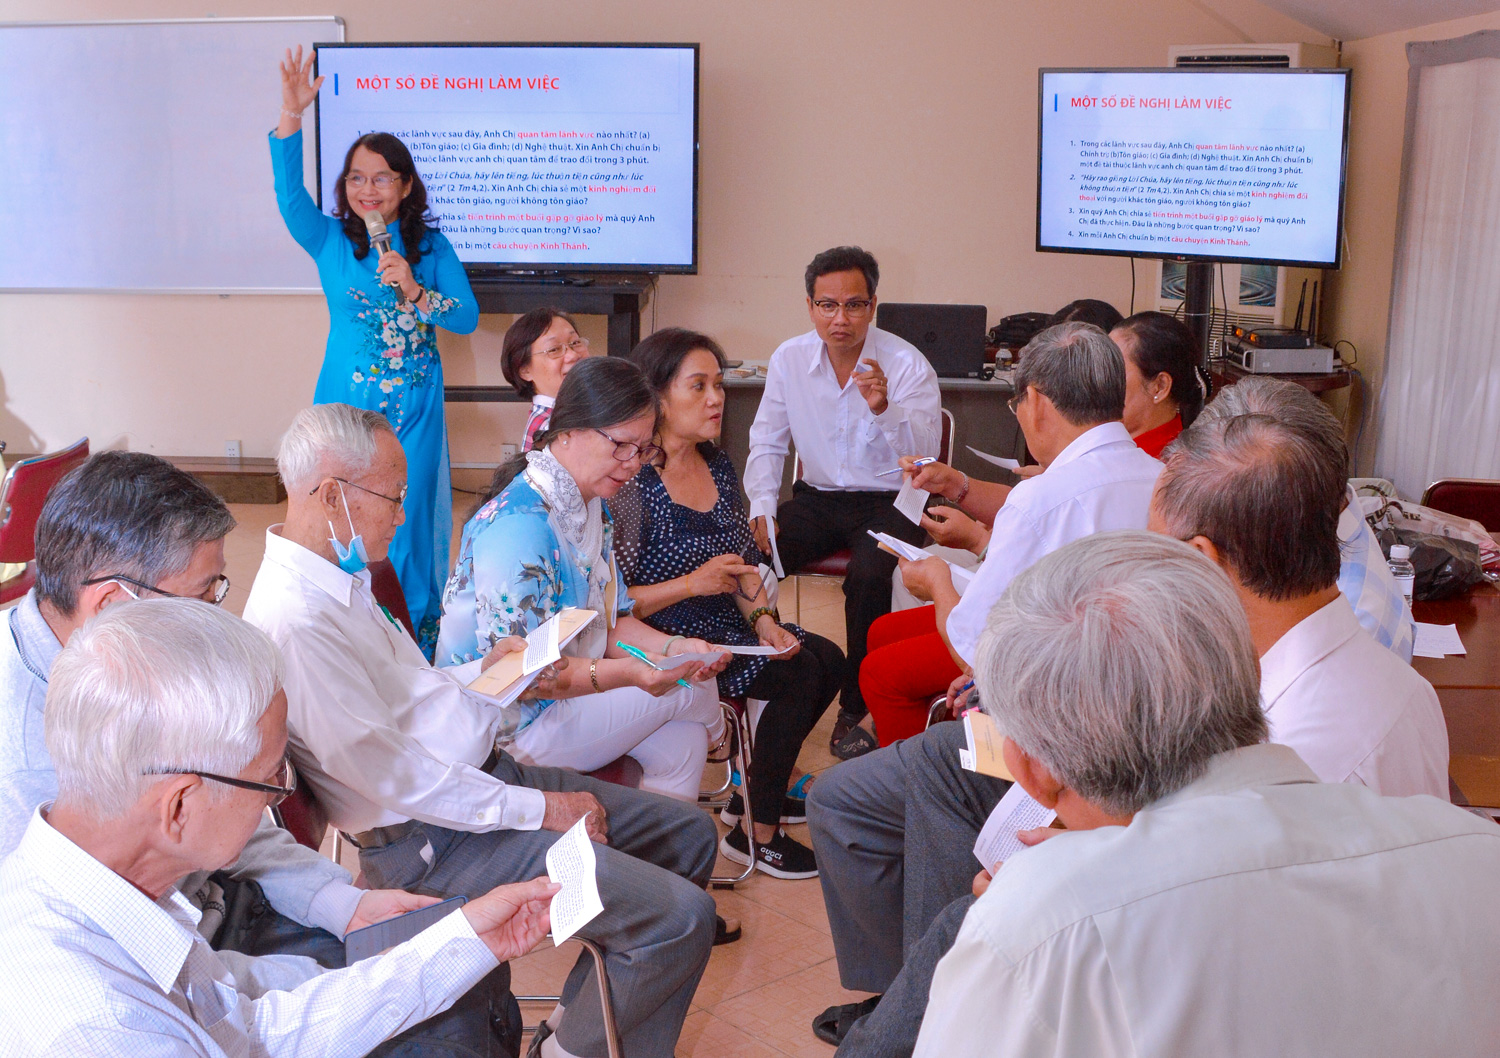 Trung tâm Mục vụ TGP Sài Gòn: Gặp gỡ Giáo lý viên phụ trách các lớp giáo lý Dự tòng và Hôn nhân ngày 26-12-2020